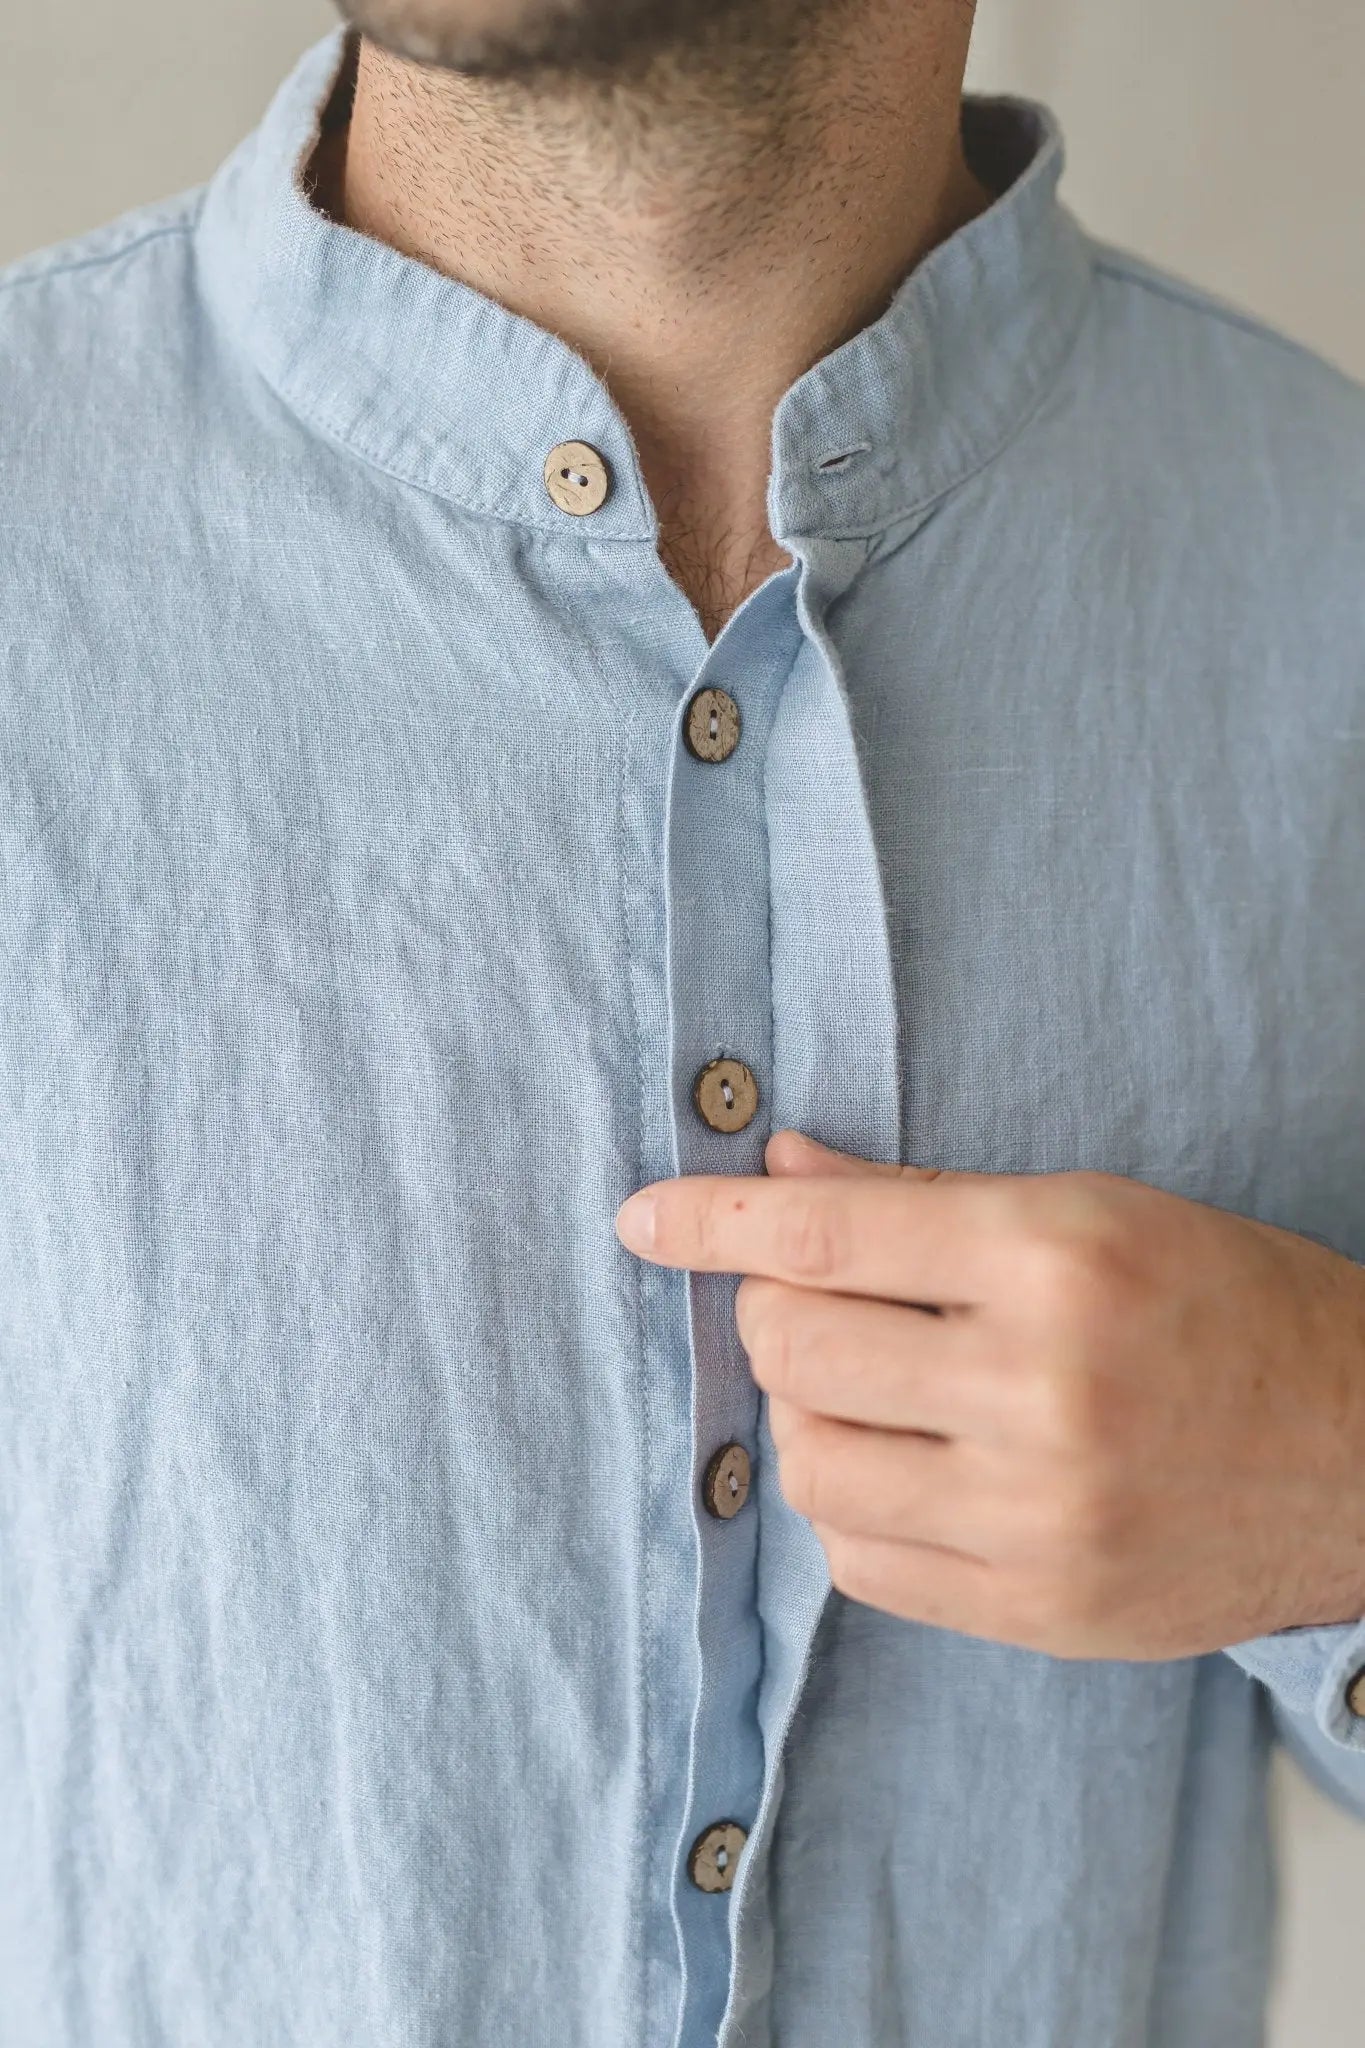 Men's Linen Shirt with Hidden Buttons - Epic Linen luxury linen